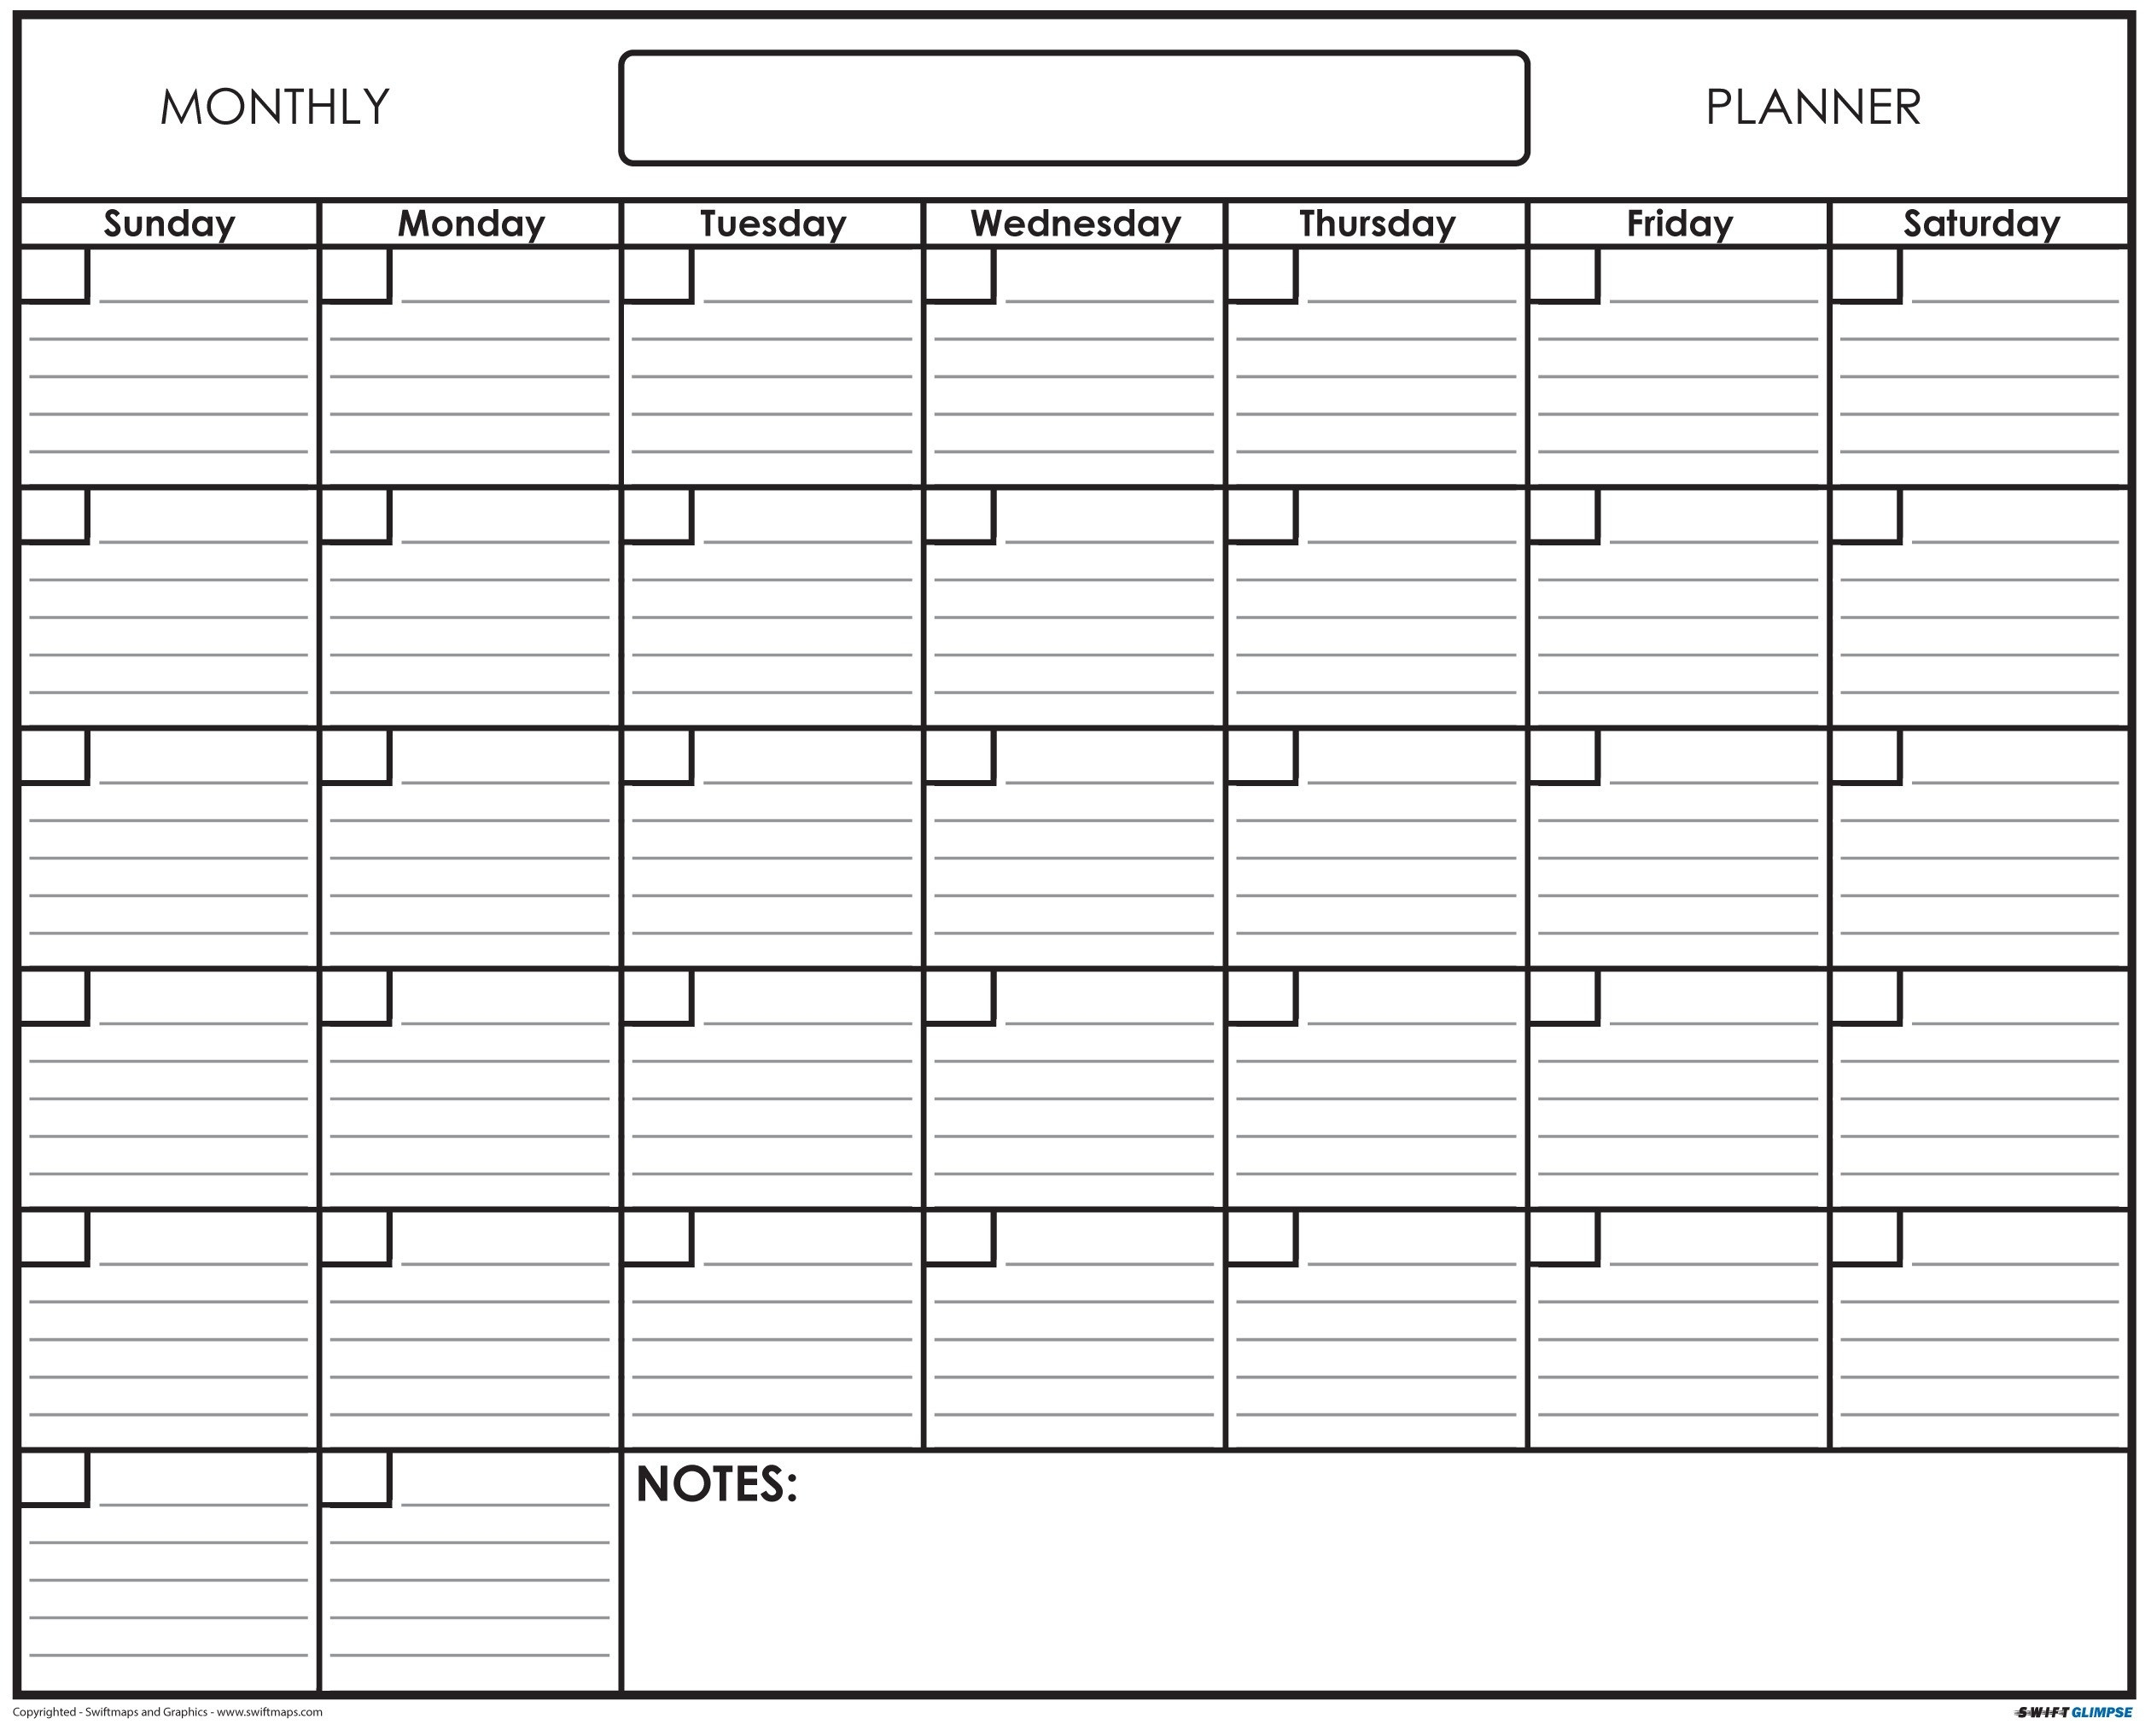 Printable Calendar With Lines | Calendar Printables Free regarding Calendars Printable 2021 Free With Grid Lines